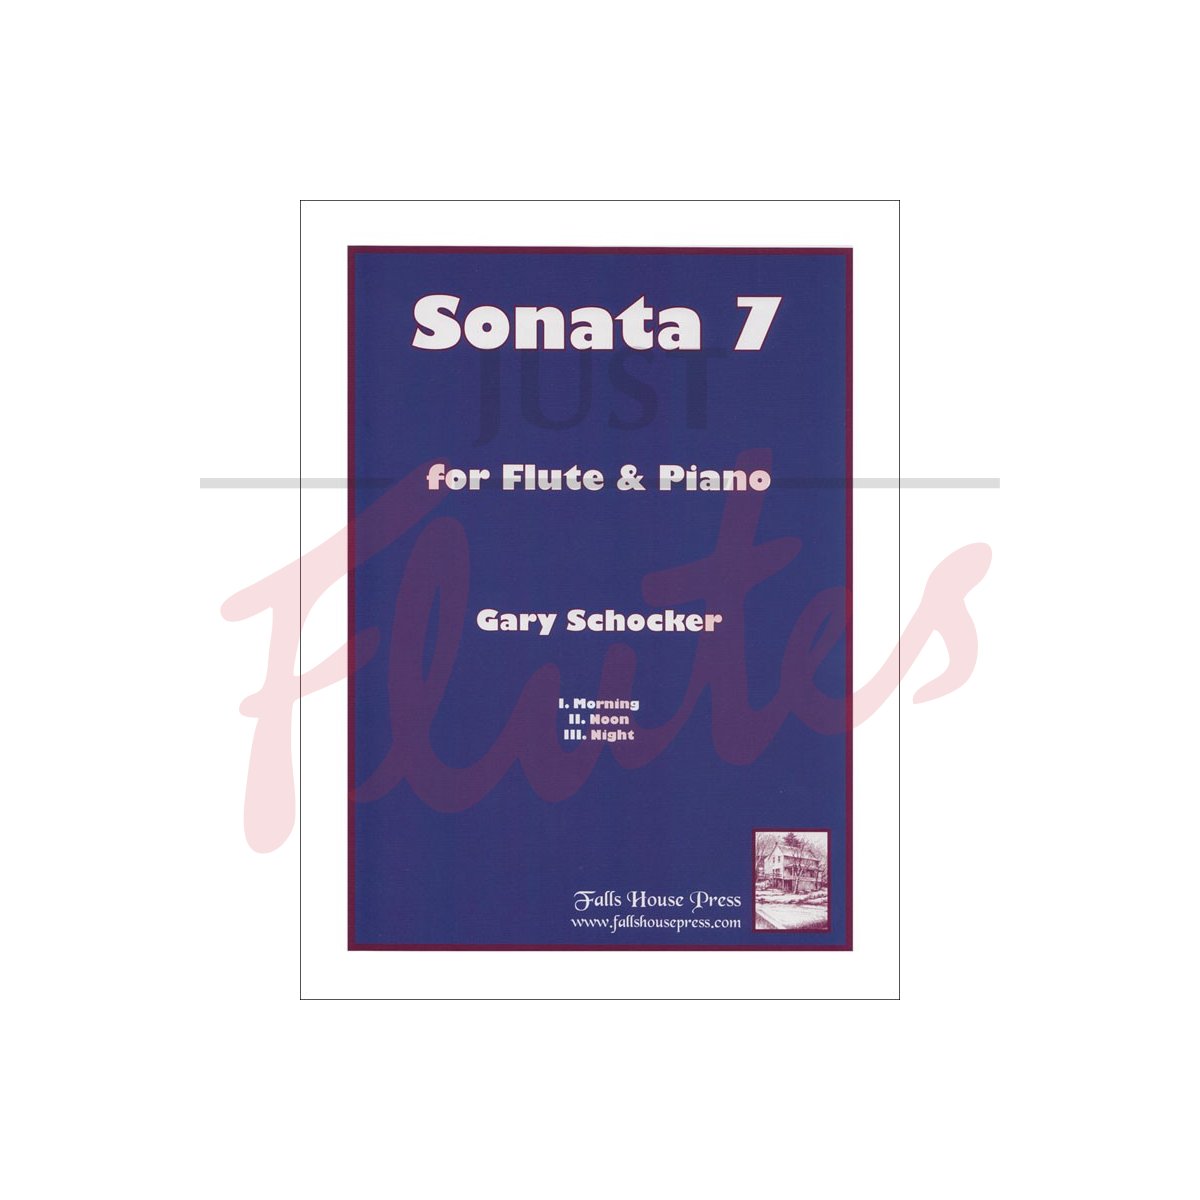 Sonata 7 for Flute and Piano